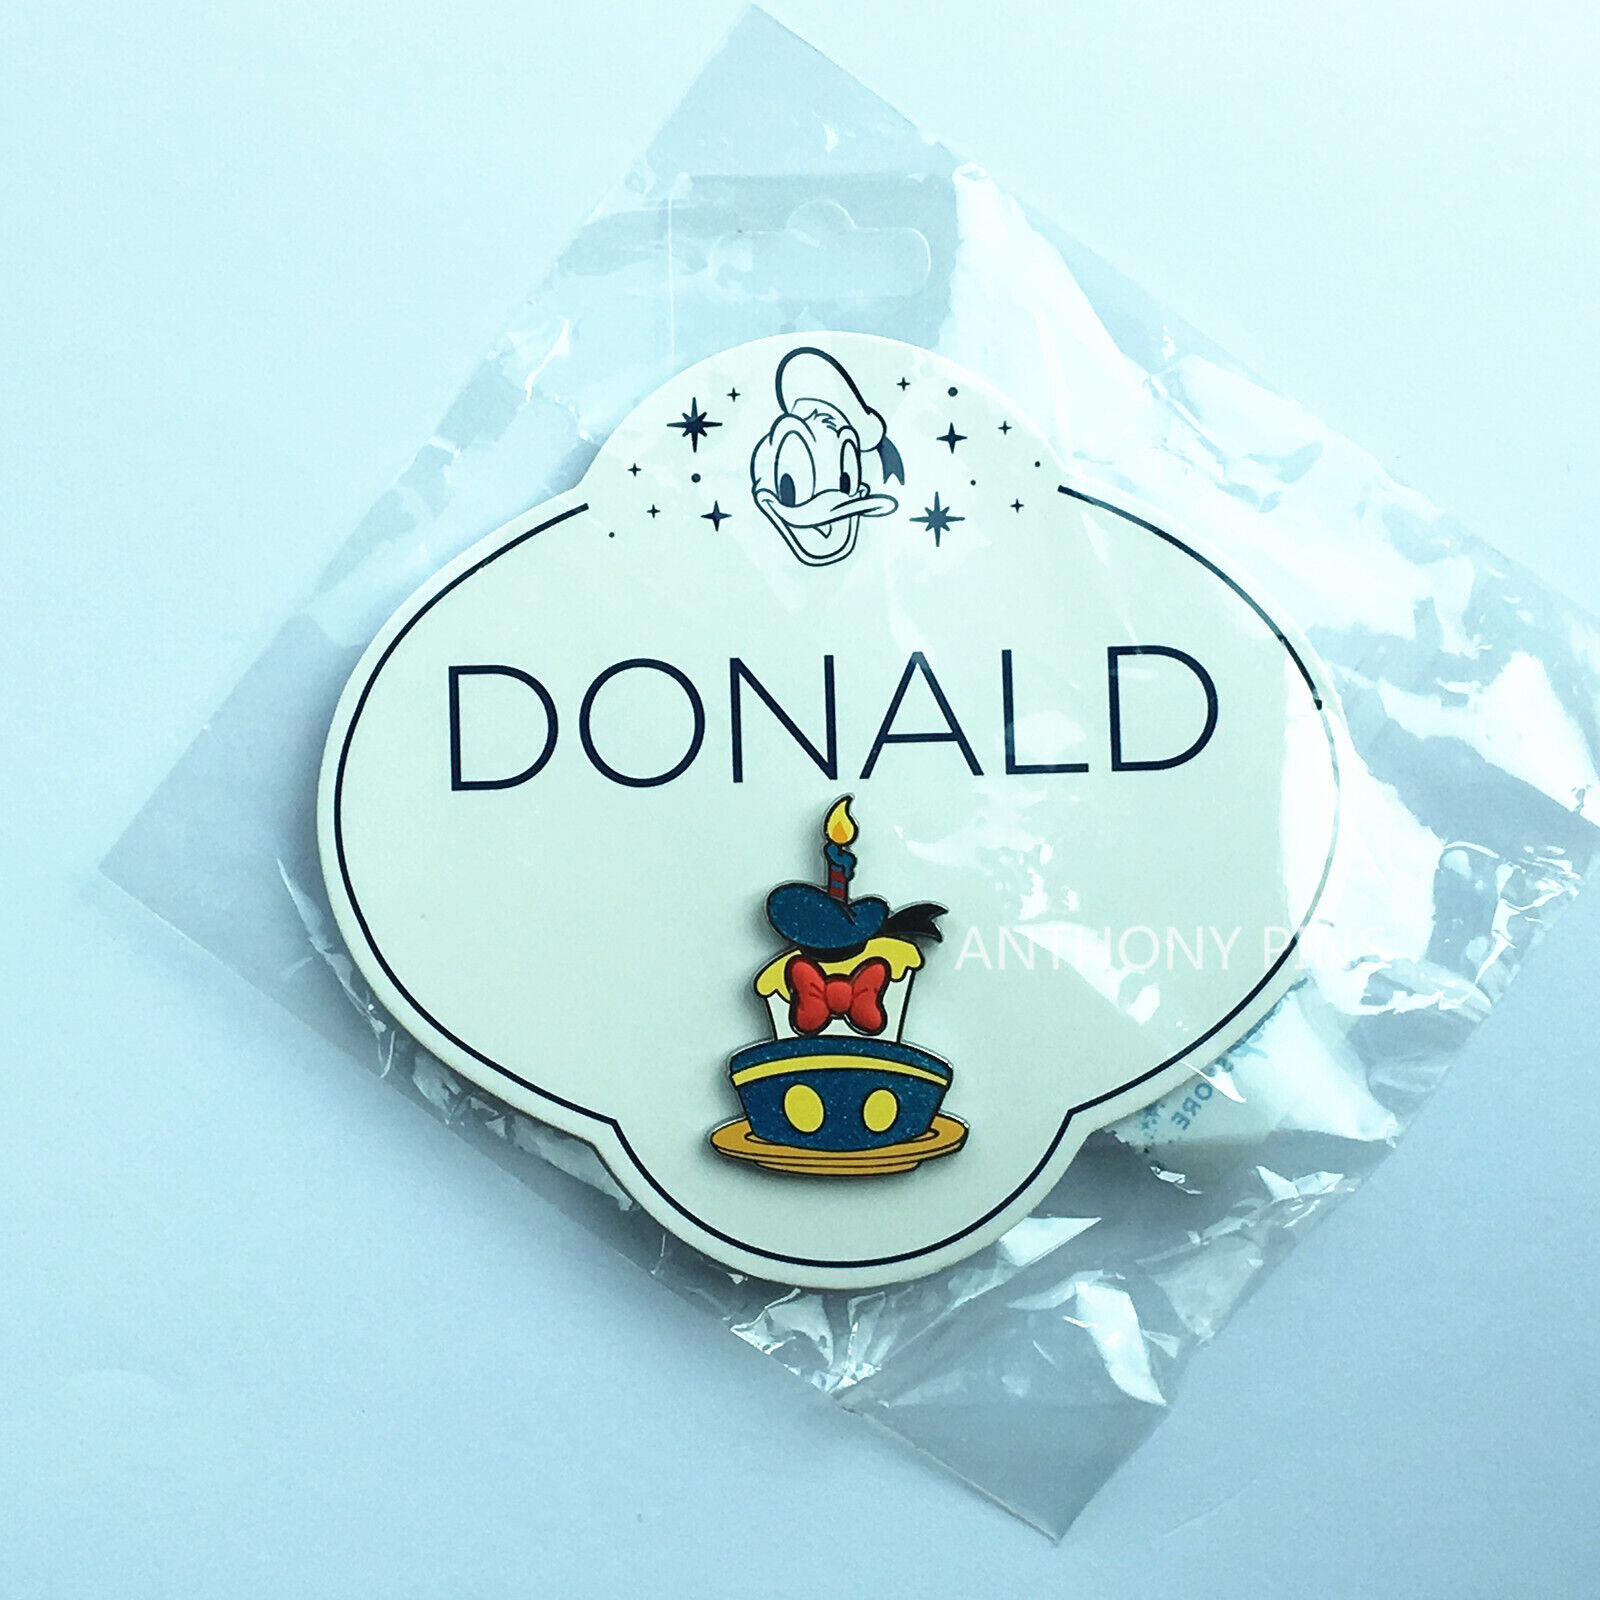 Disney Pin Shanghai Disneyland Donald Duck 85th Anniversary Birthday New Rare